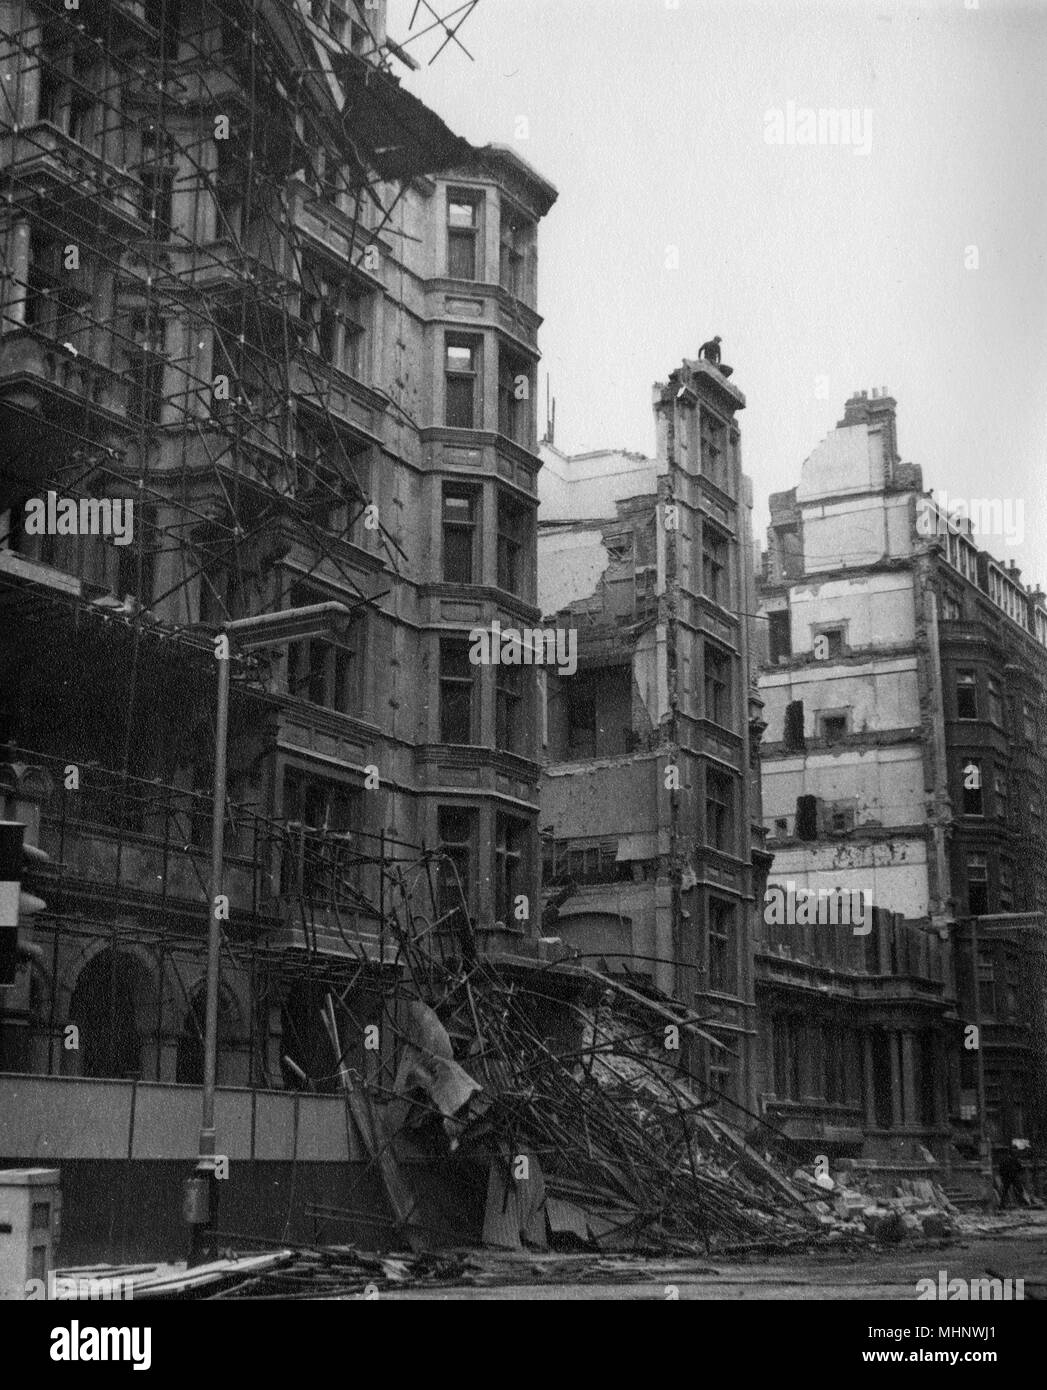 London - Gebäude an der Victoria Street/Broadway, die aufgrund von Abbrucharbeiten zusammengebrochen - 12. Dezember 1963. Rettungskräfte zunächst befürchtet Handwerker inmitten der Trümmer gefangen zu werden. Aber zum Glück war das nicht der Fall. Datum: 1963 Stockfoto